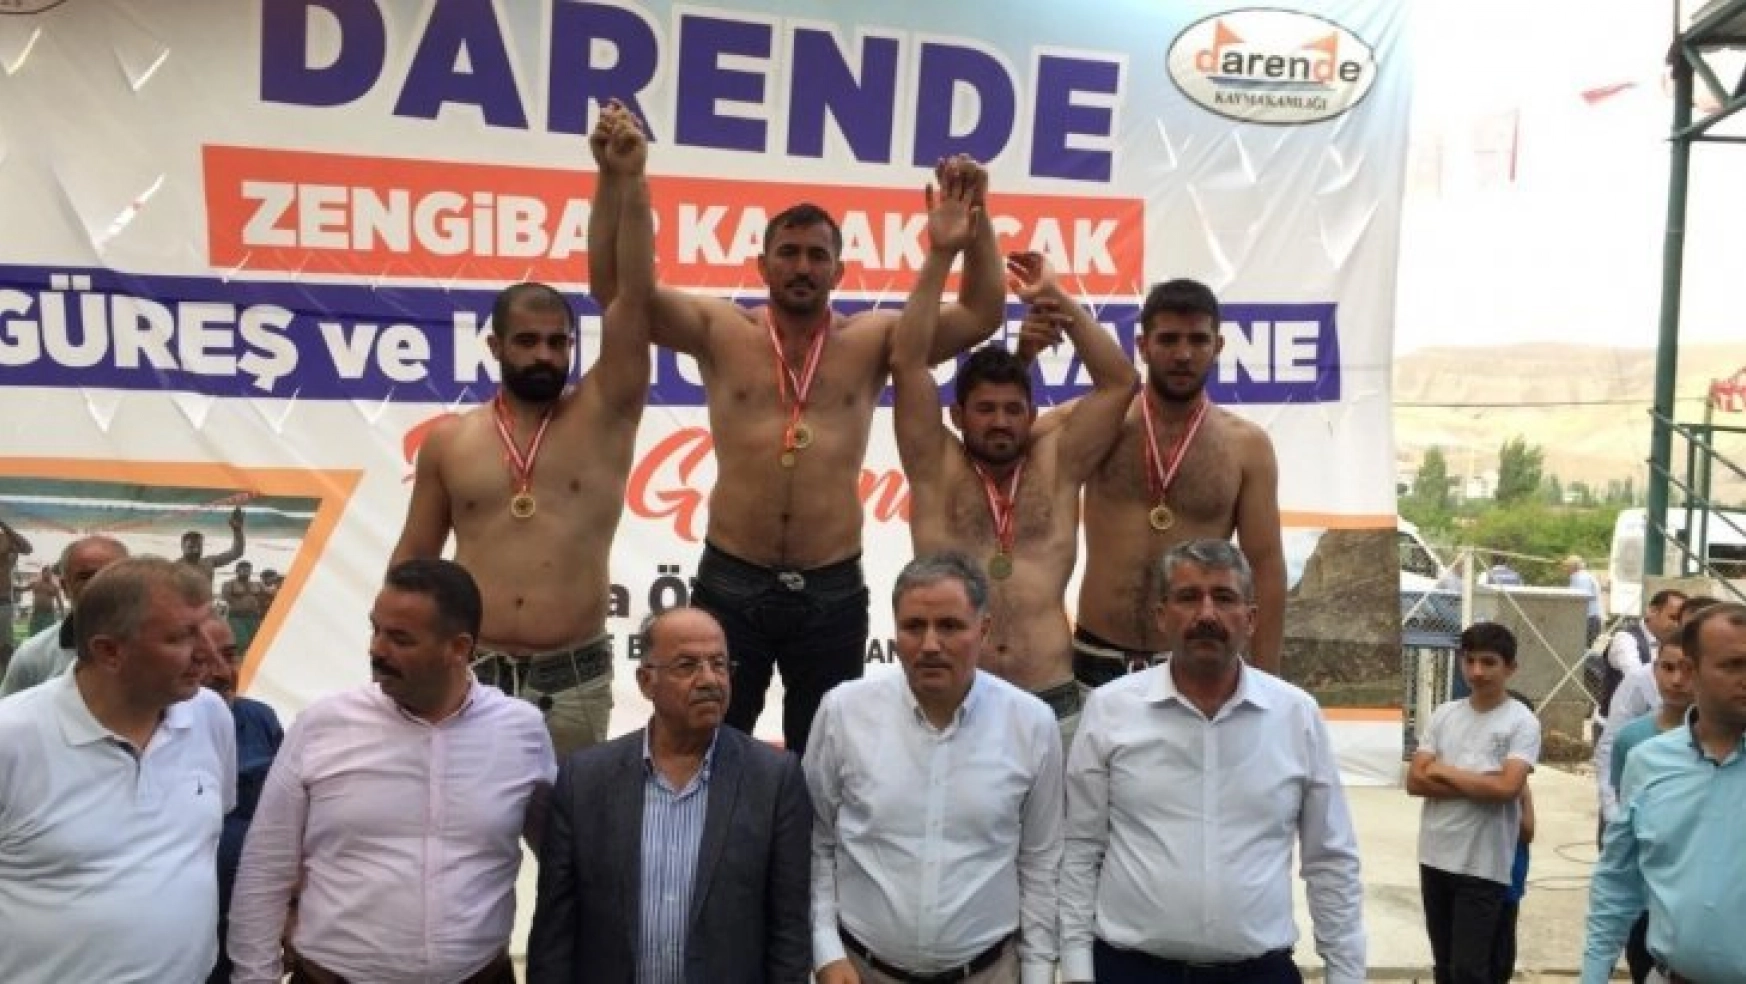 Darende'de Zengibar Karakucak Güreşleri